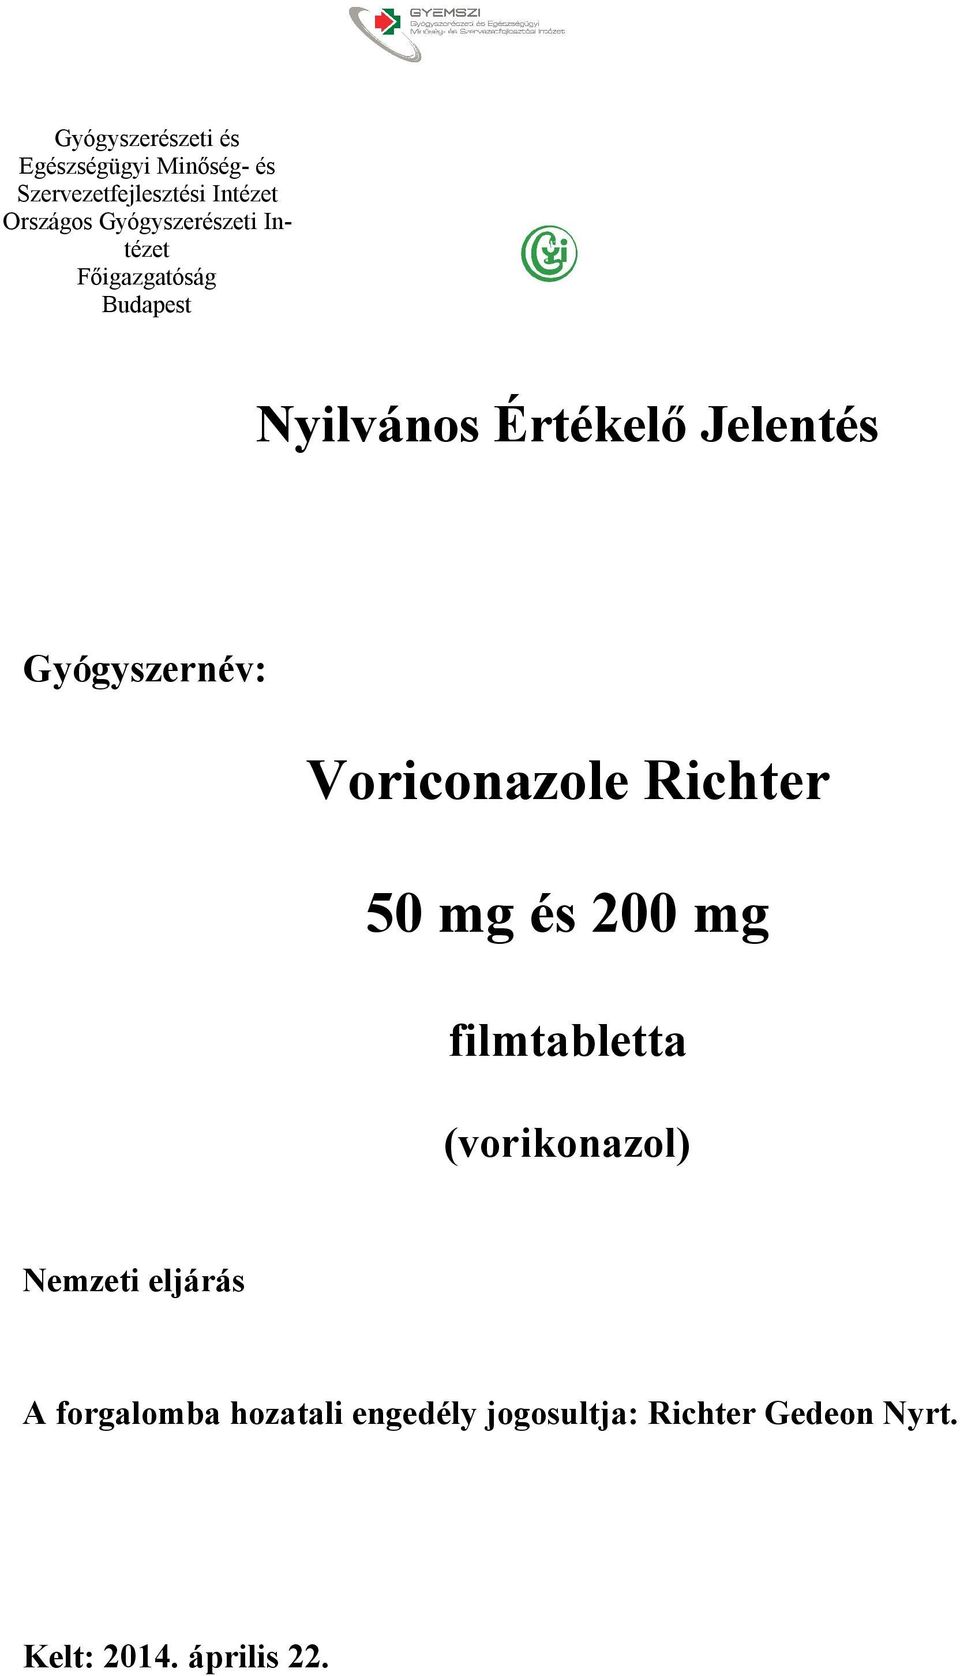 Voriconazole Richter. 50 mg és 200 mg - PDF Free Download